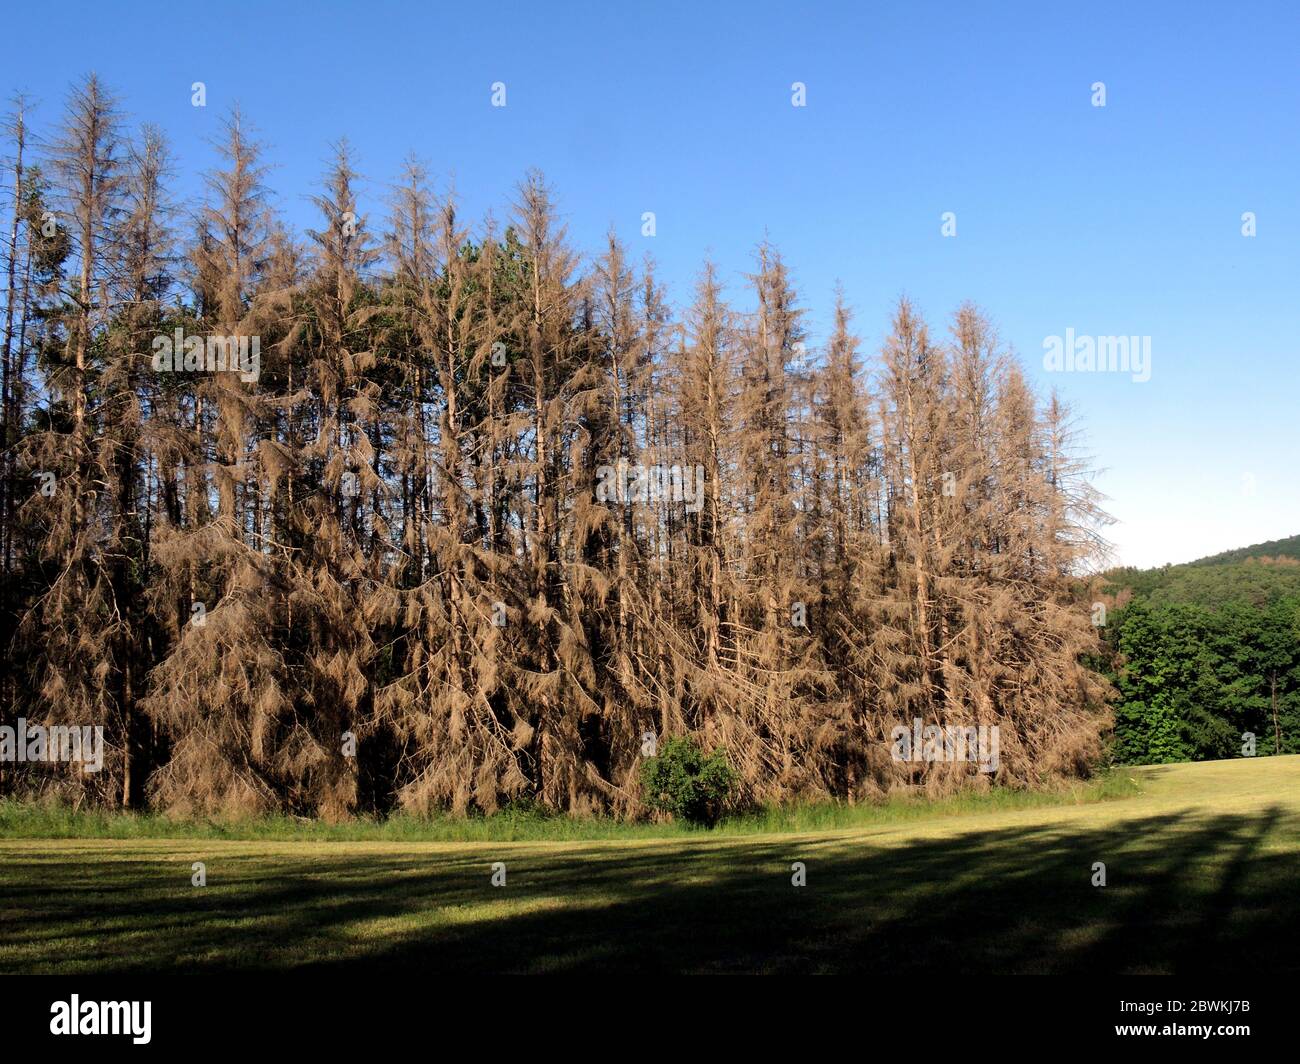 Épinette de Norvège (Picea abies), forêt morte d'épinette causée par la sécheresse et le coléoptère de l'écorce, Allemagne, Rhénanie-du-Nord-Westphalie, Bergisches Land Banque D'Images